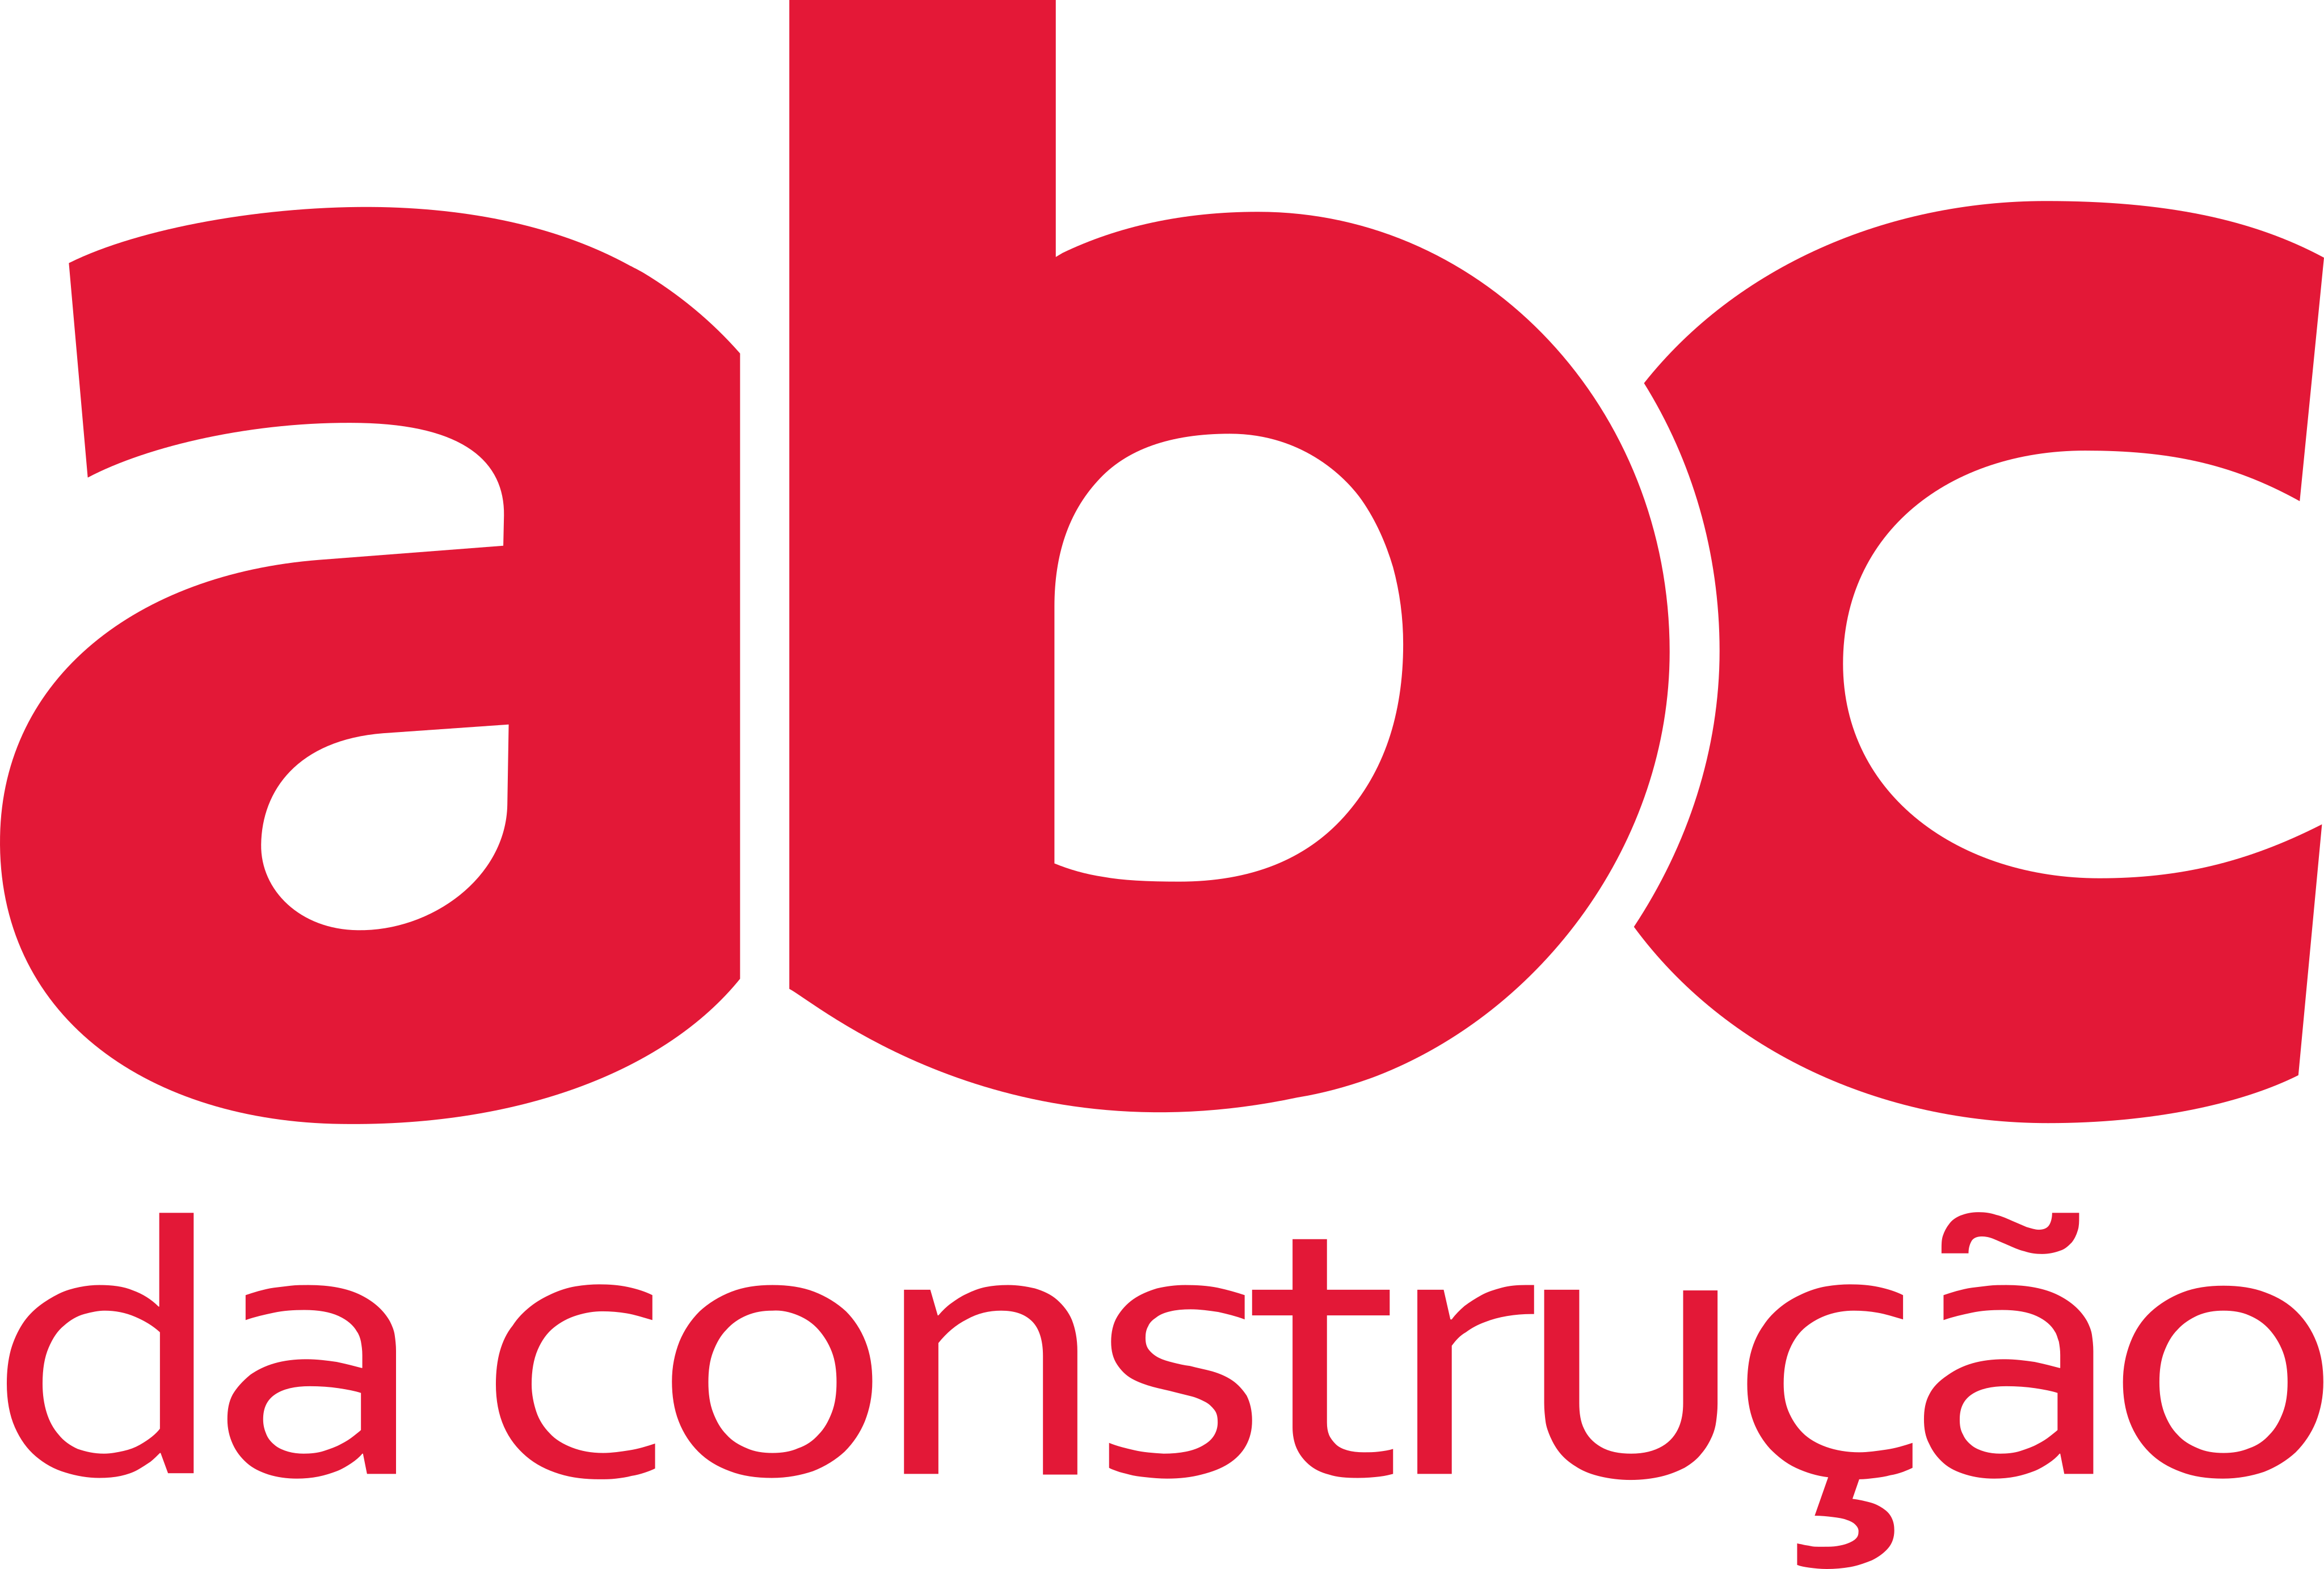 ABC da Construção Logo.